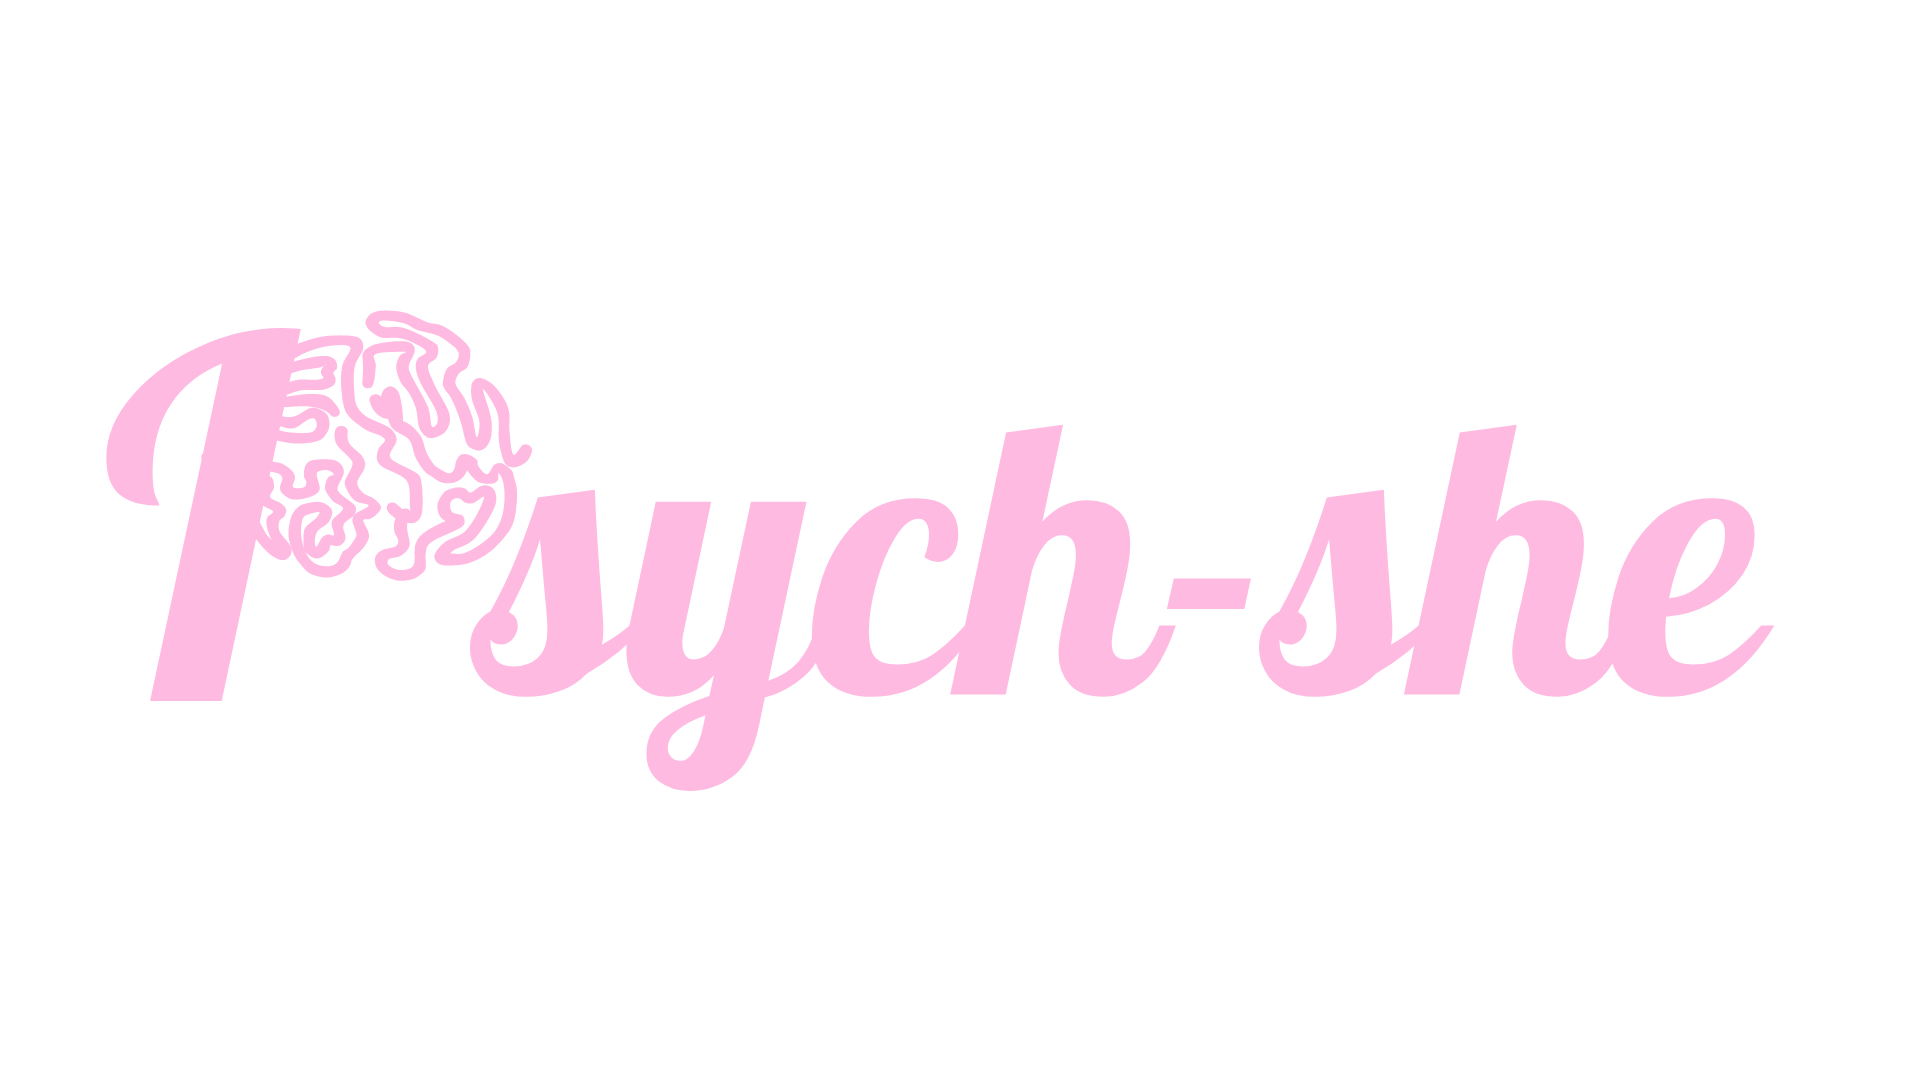 PsychShe